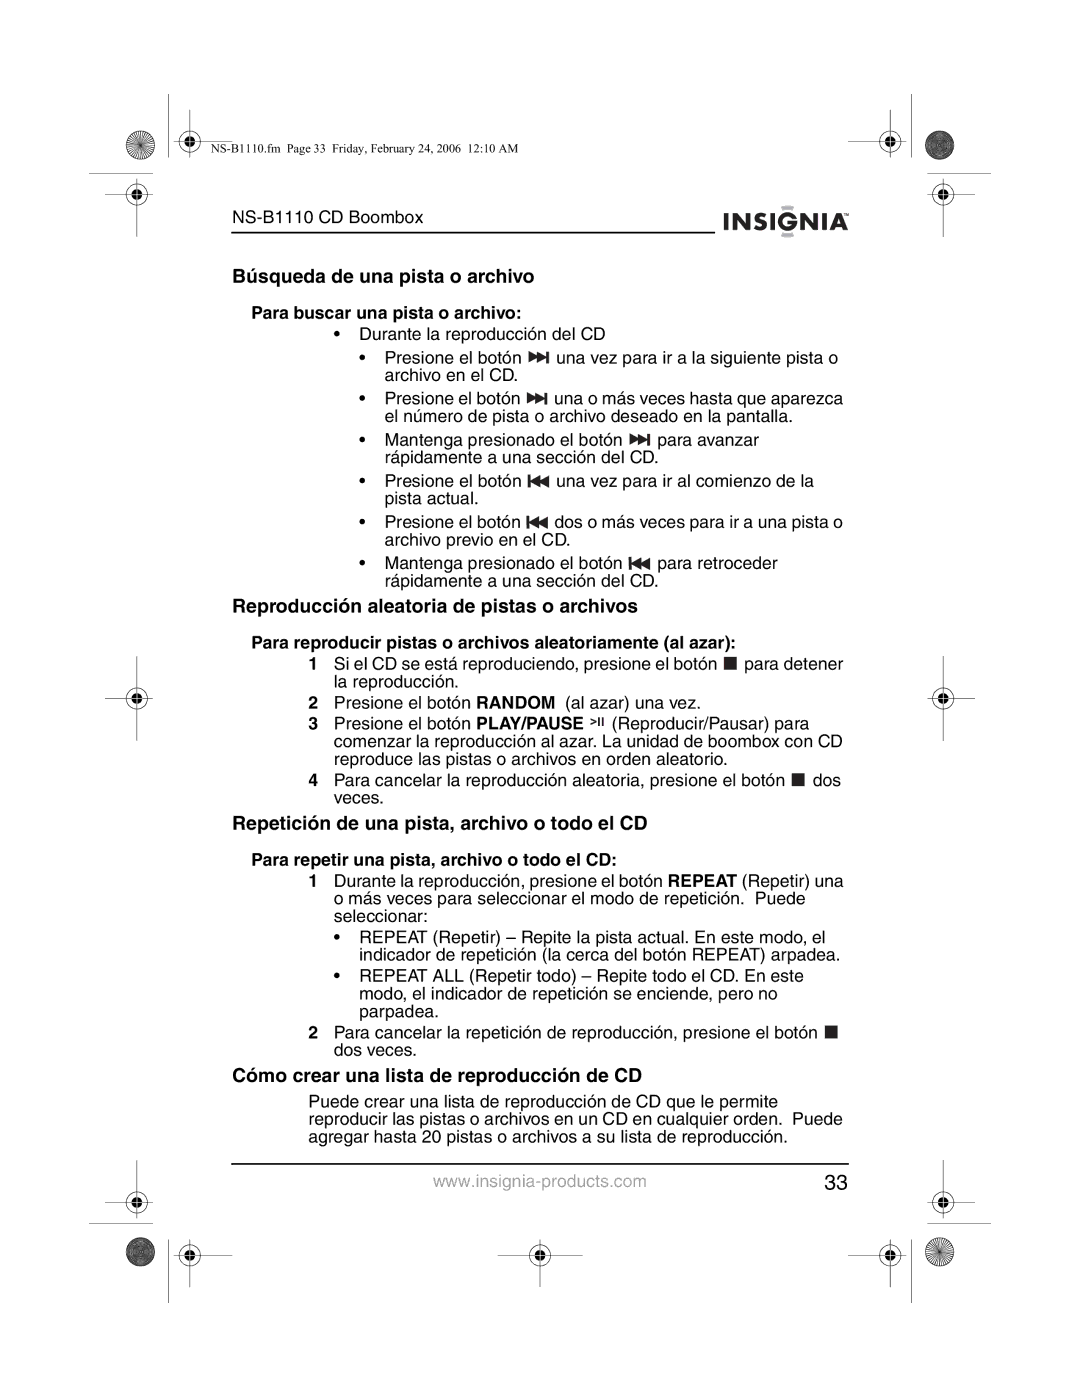 Insignia NS-B1110 manual Búsqueda de una pista o archivo, Reproducción aleatoria de pistas o archivos 